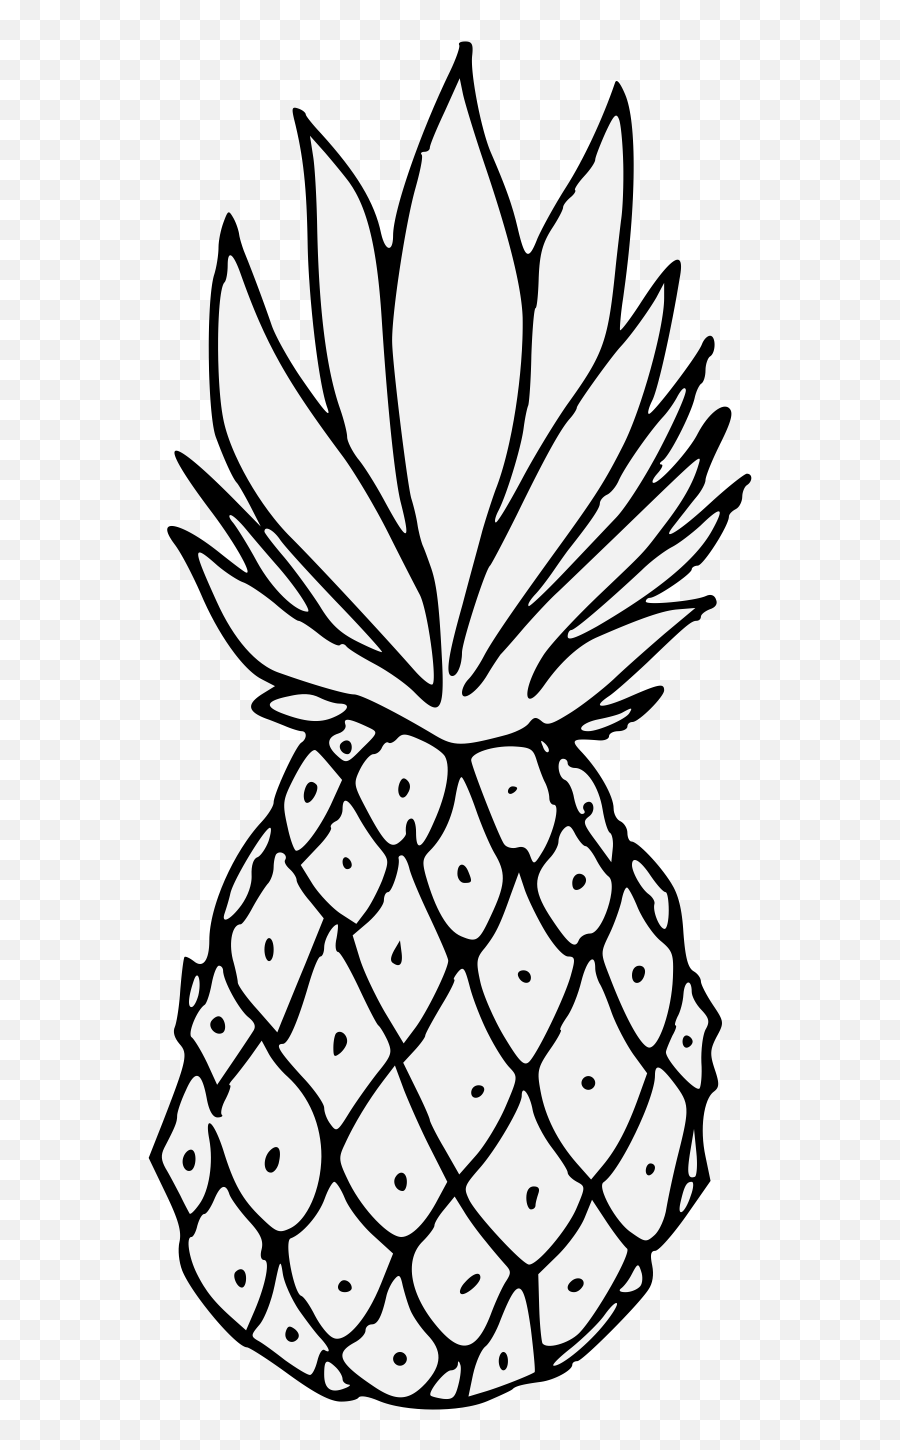 Pineapple Clipart Black And White - Heraldic Pineapple Emoji,Pineapple Clipart Black And White